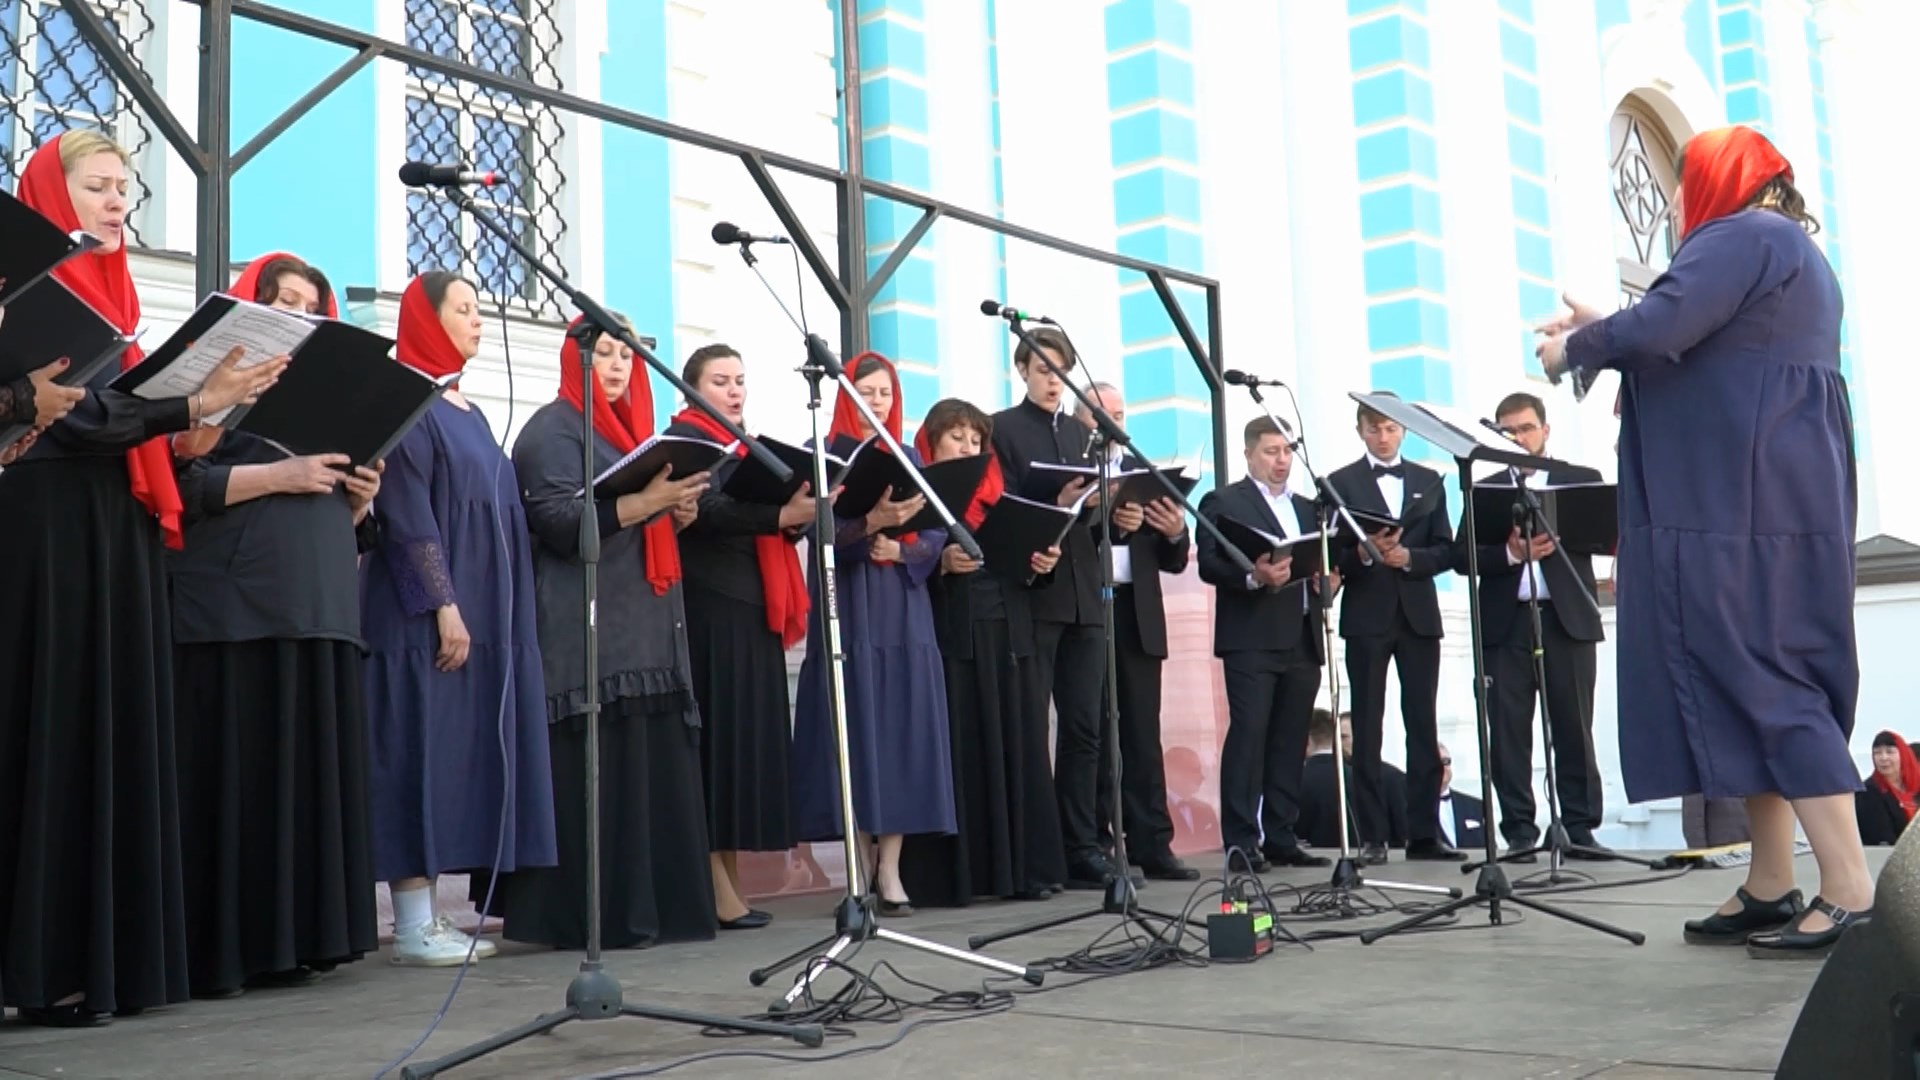 Карельские хористы споют в Костроме про Ивана Сусанина